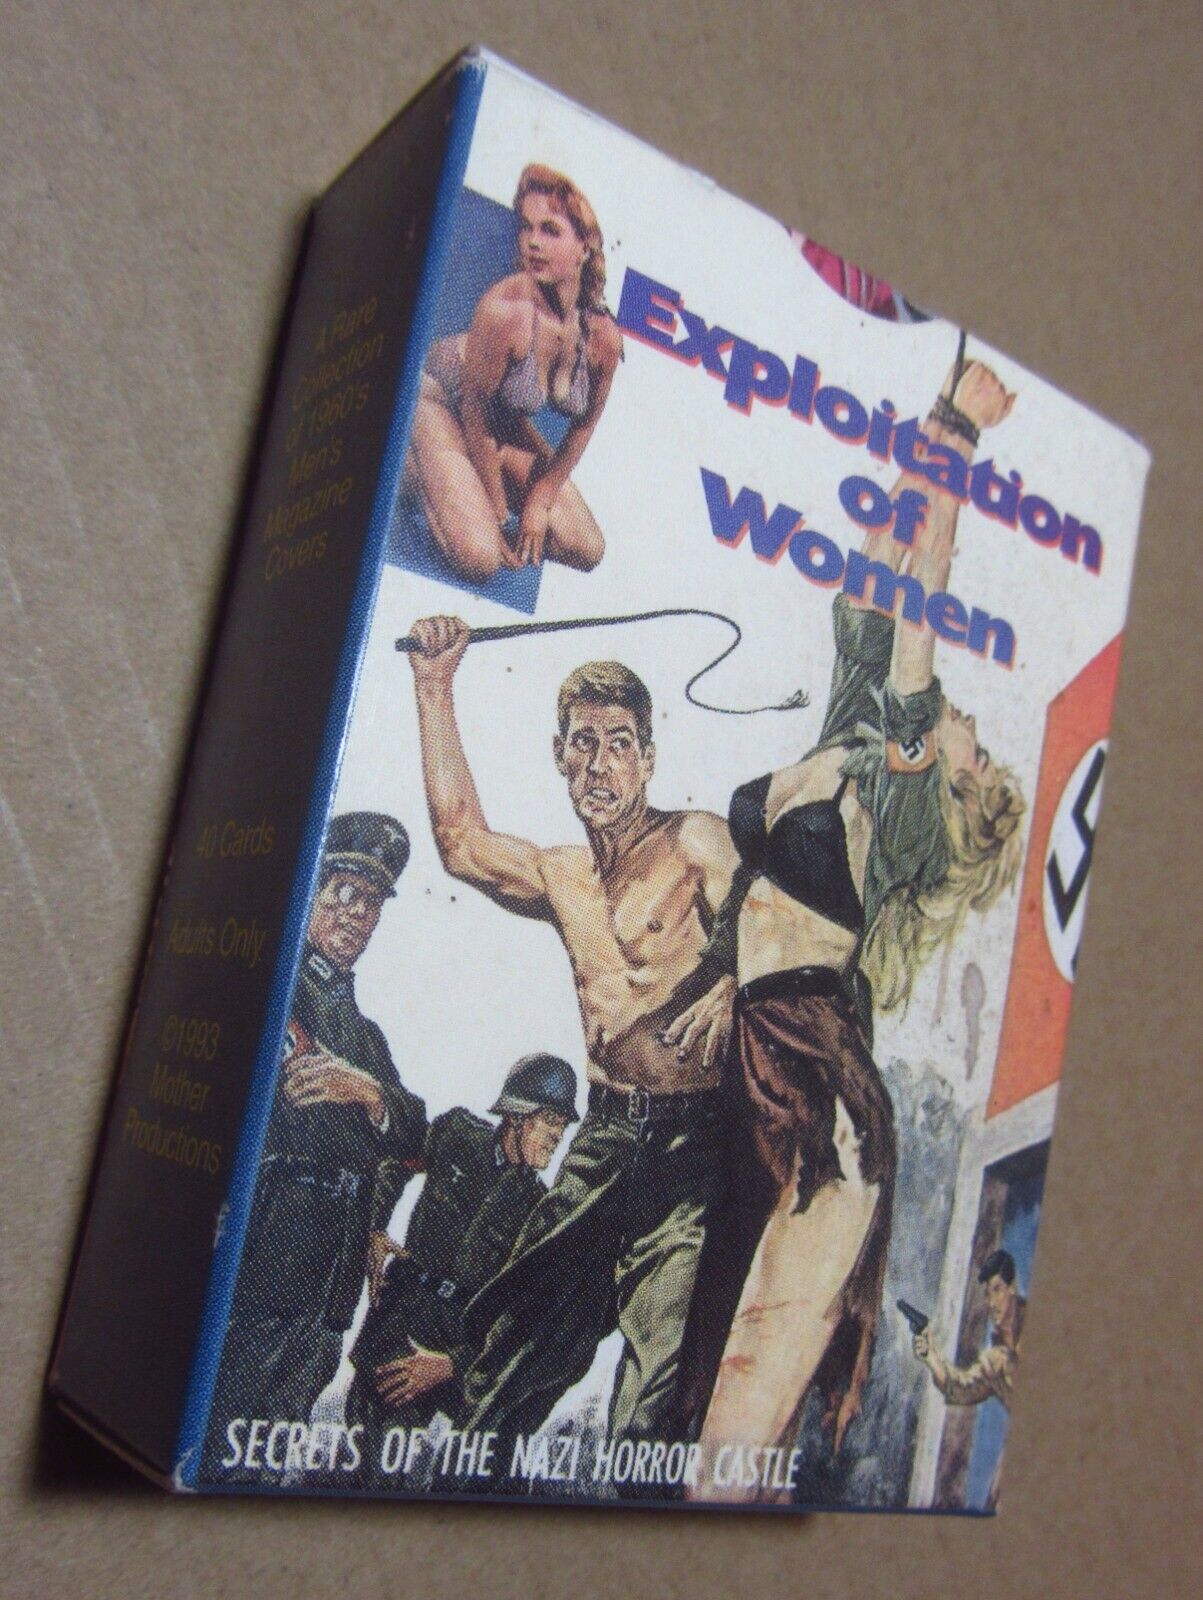 1960s MAGAZINE COVERS Exploitation of Women card set...Bondage covers etc.